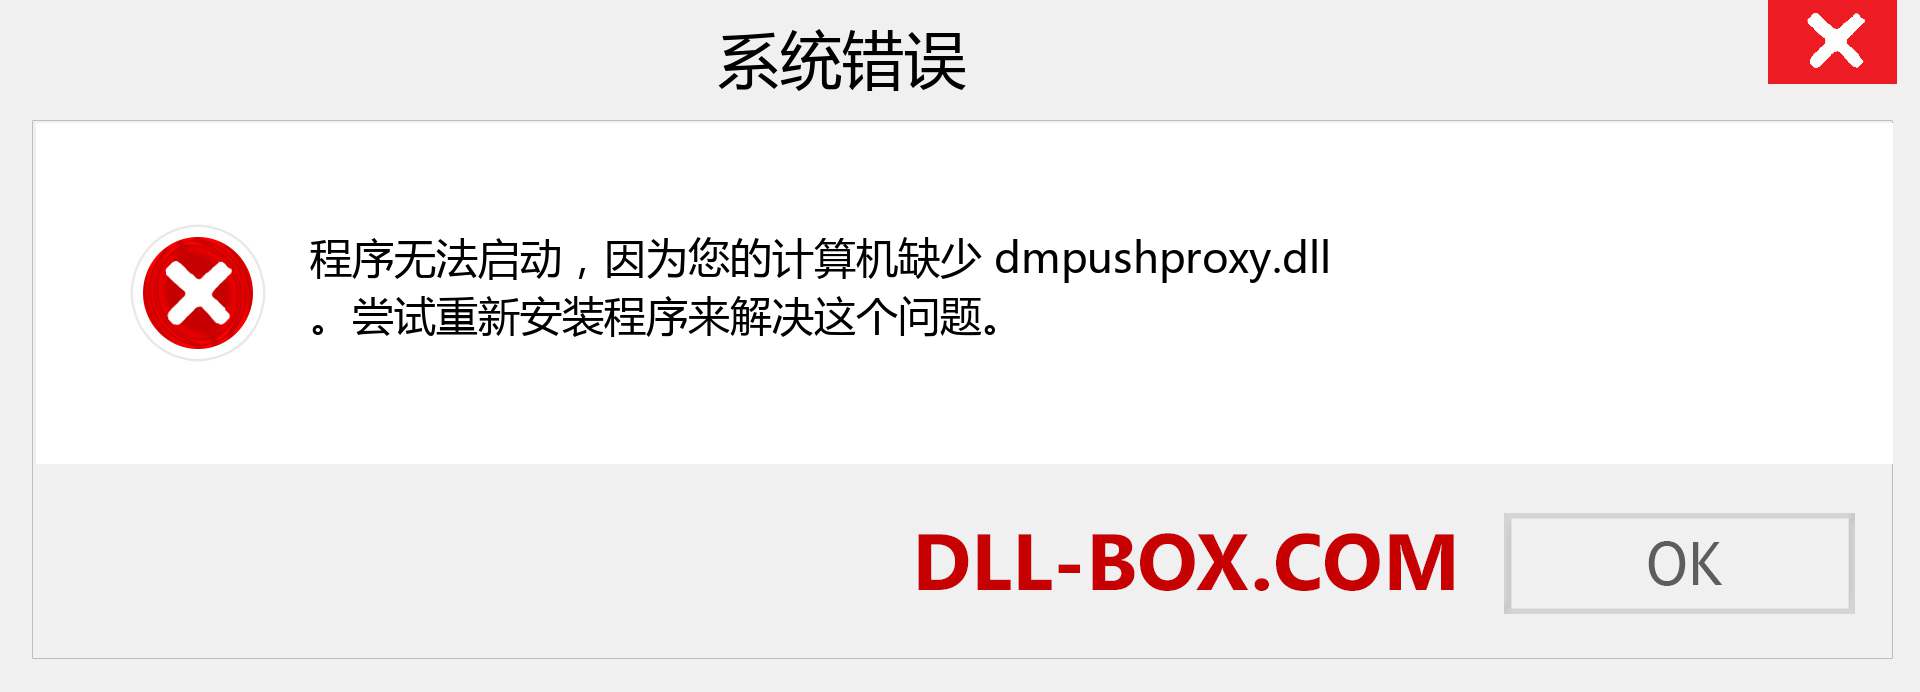 dmpushproxy.dll 文件丢失？。 适用于 Windows 7、8、10 的下载 - 修复 Windows、照片、图像上的 dmpushproxy dll 丢失错误